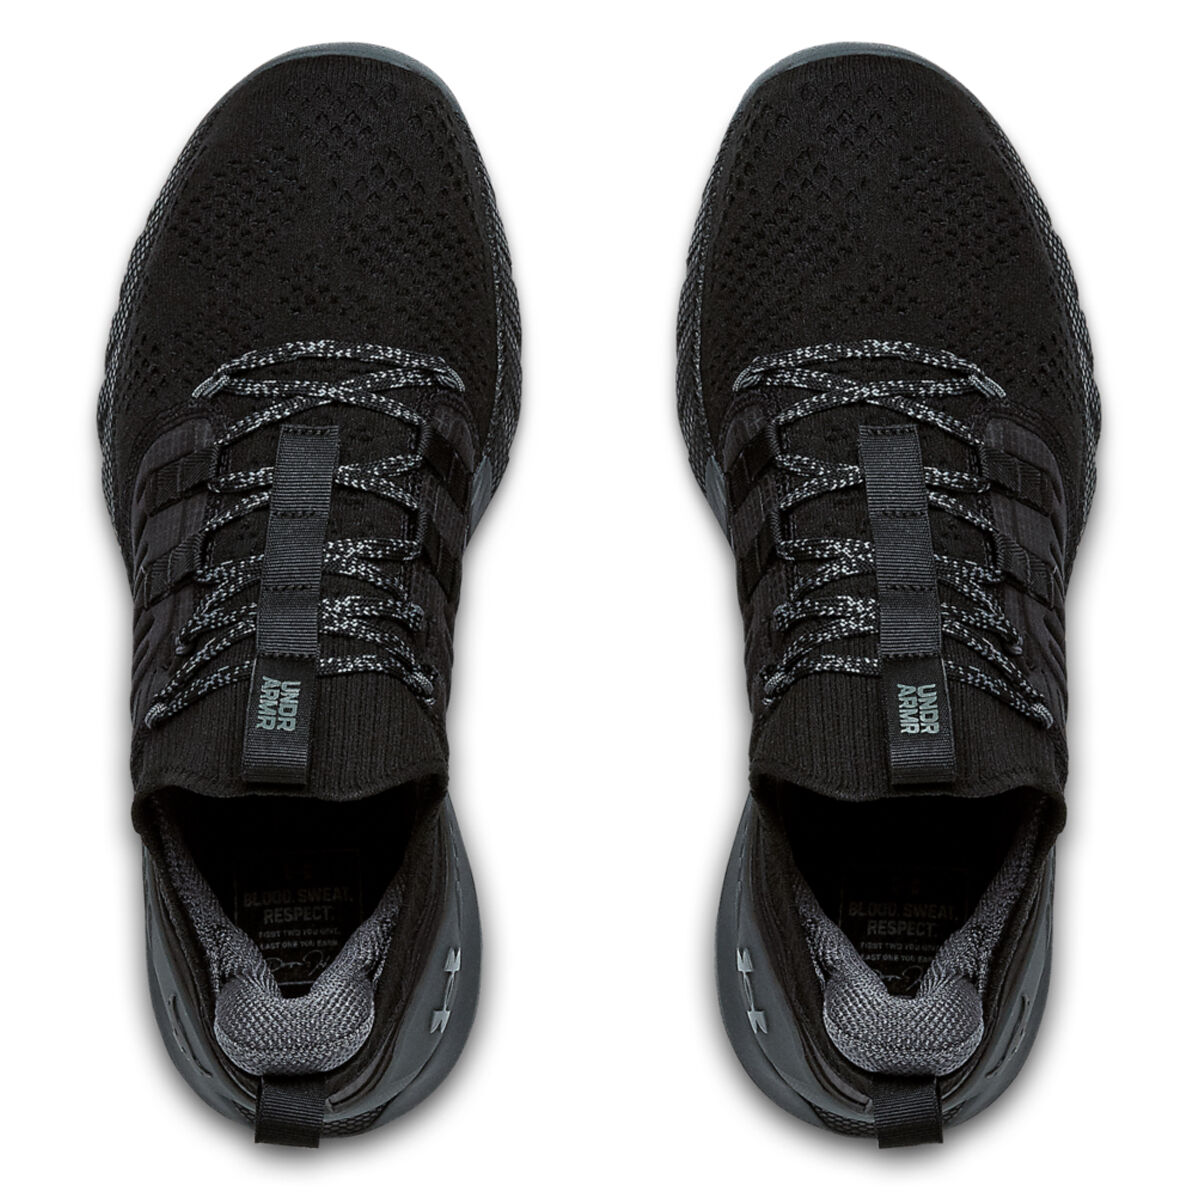 project rock black shoes